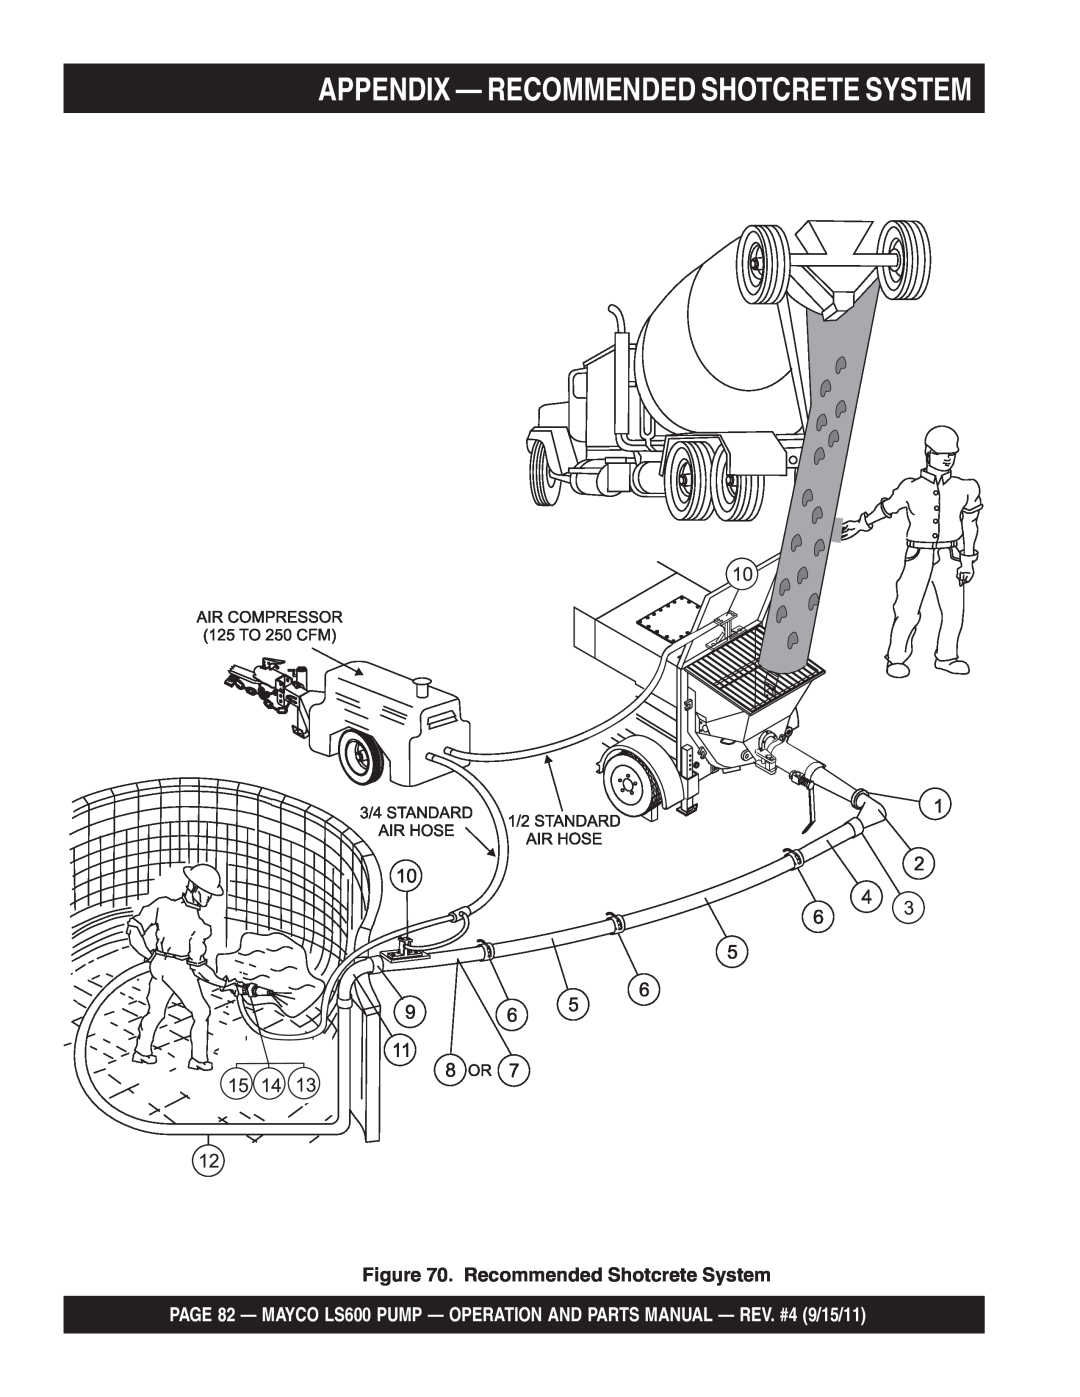 Multiquip LS600 manual Appendix — Recommended Shotcrete System 